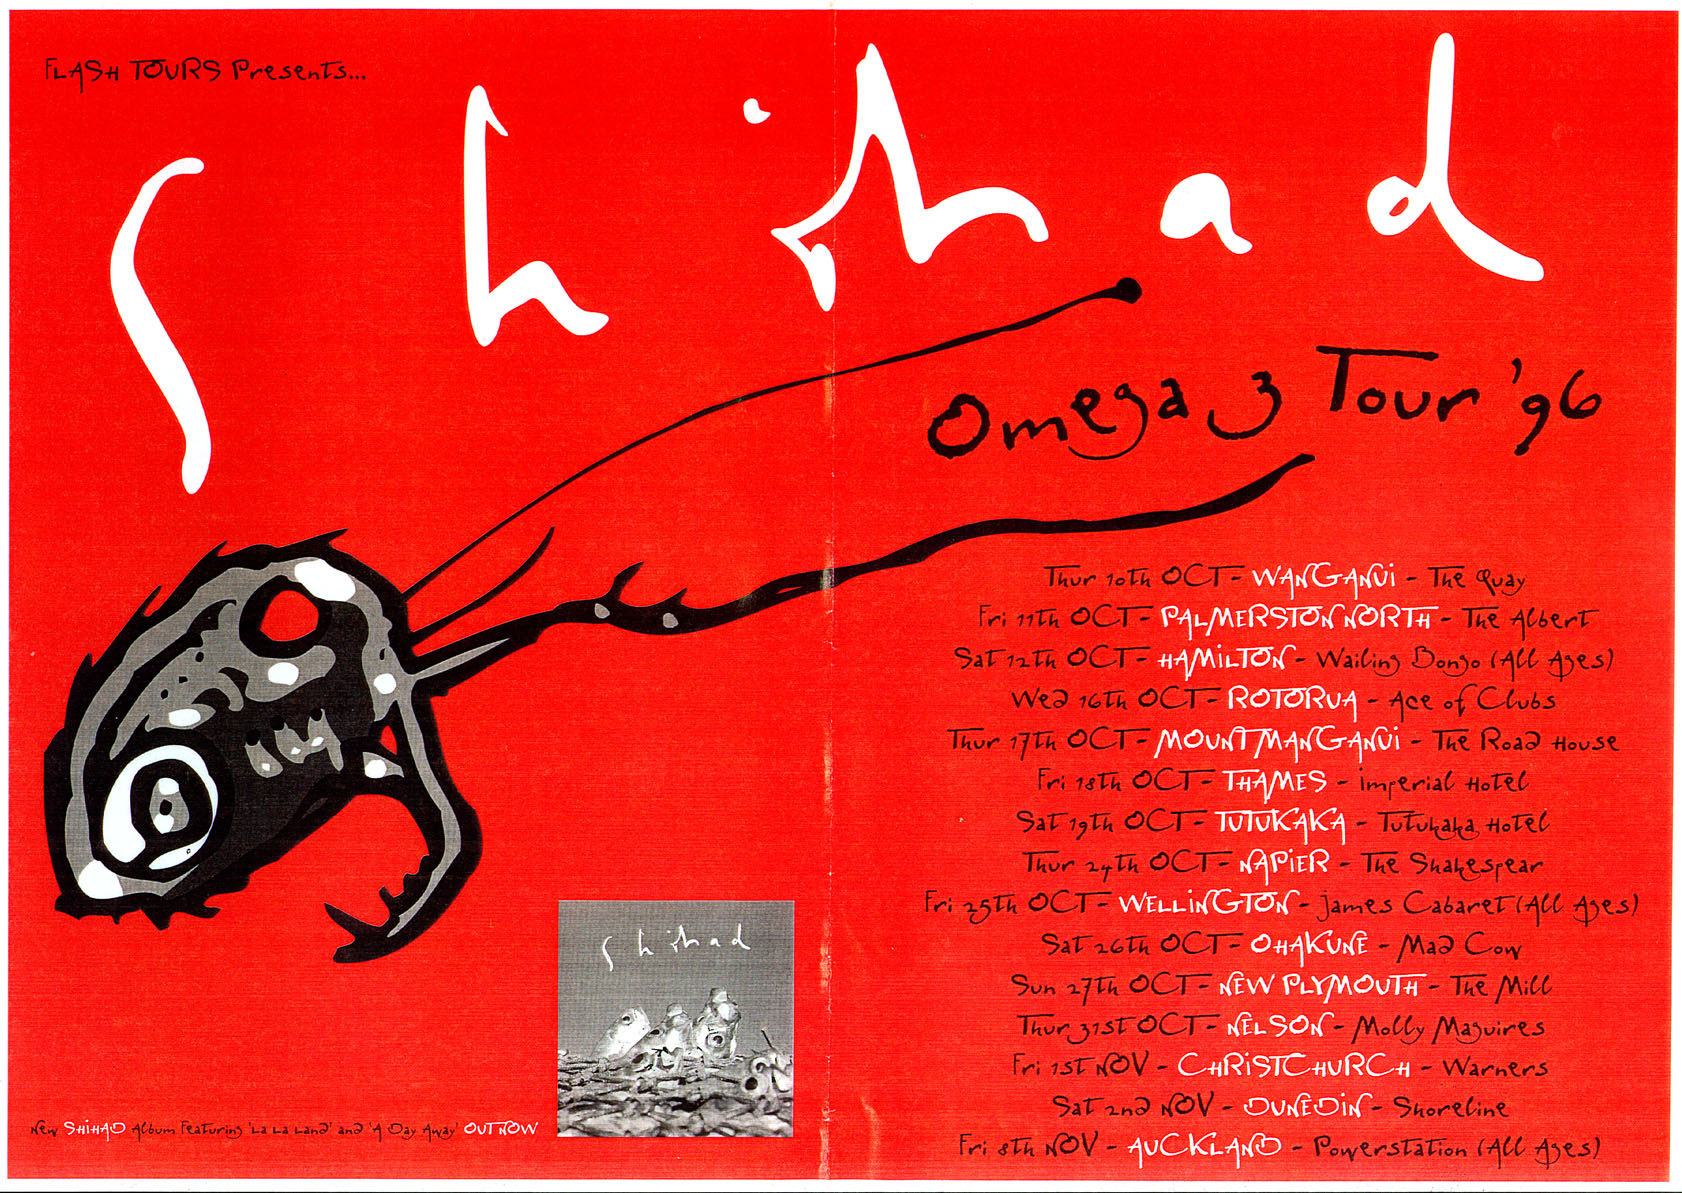 1996 Omega3 Tour Poster.jpg